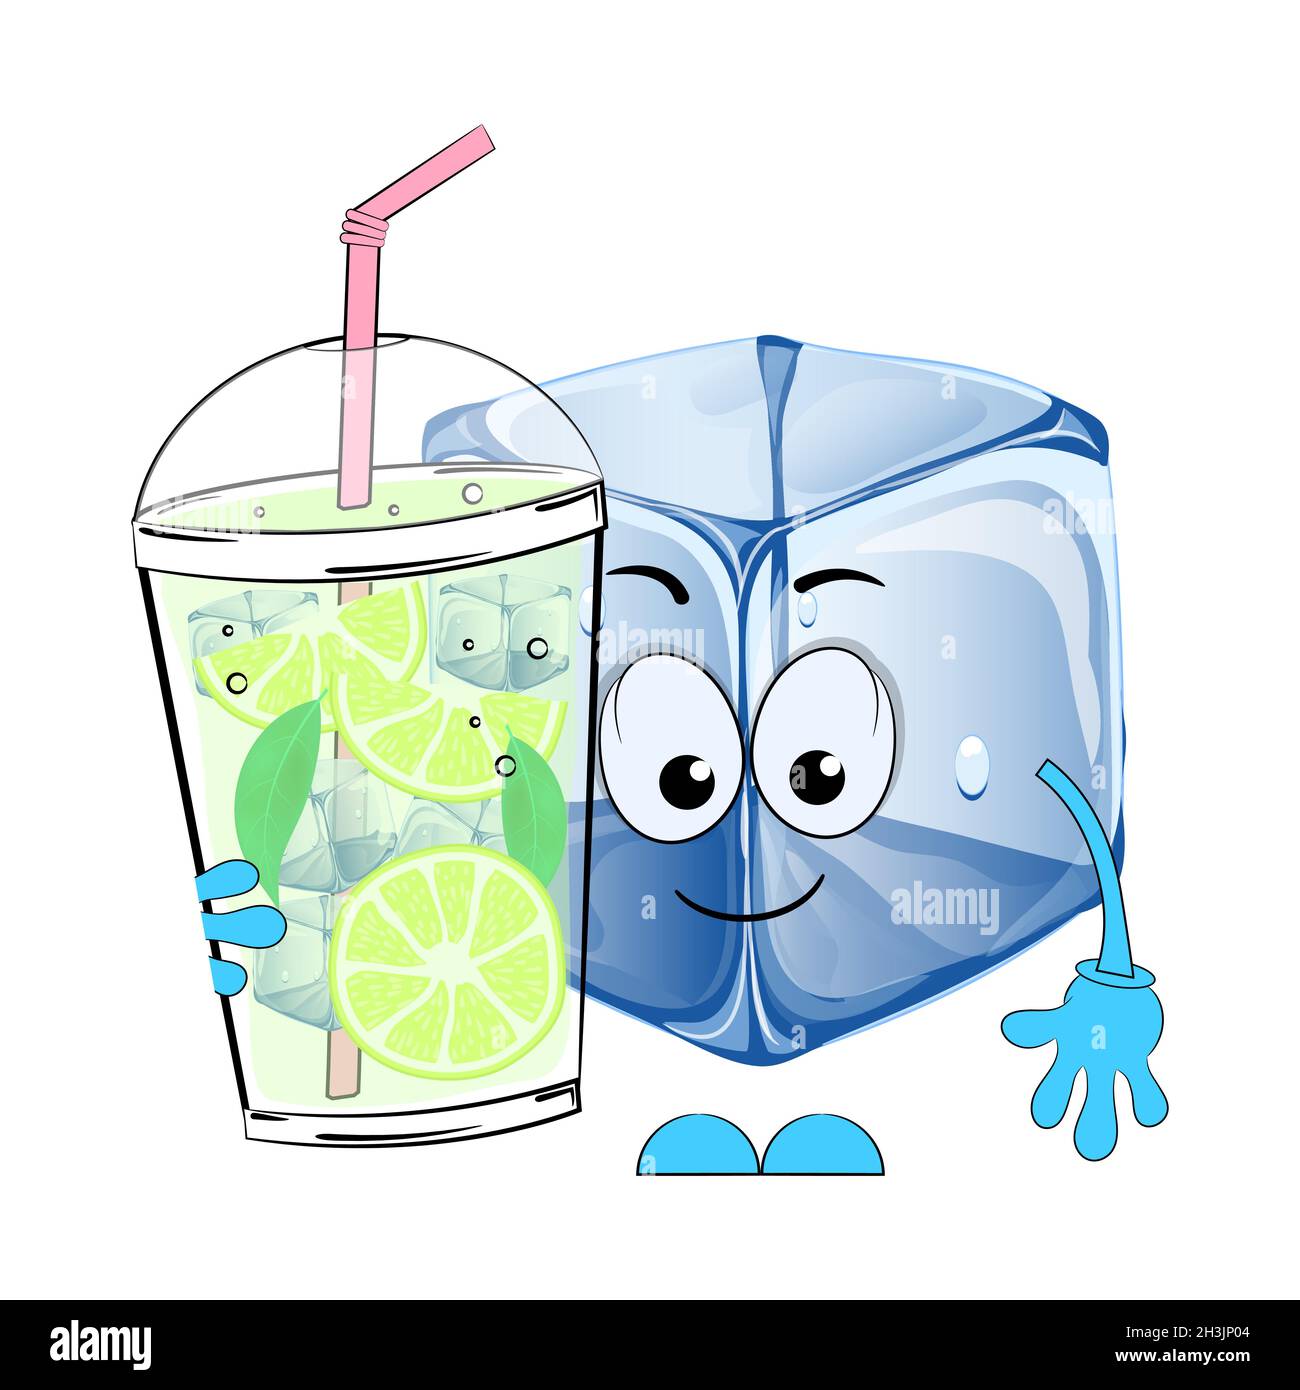 Cubos de hielo de dibujos animados.: ilustración de stock